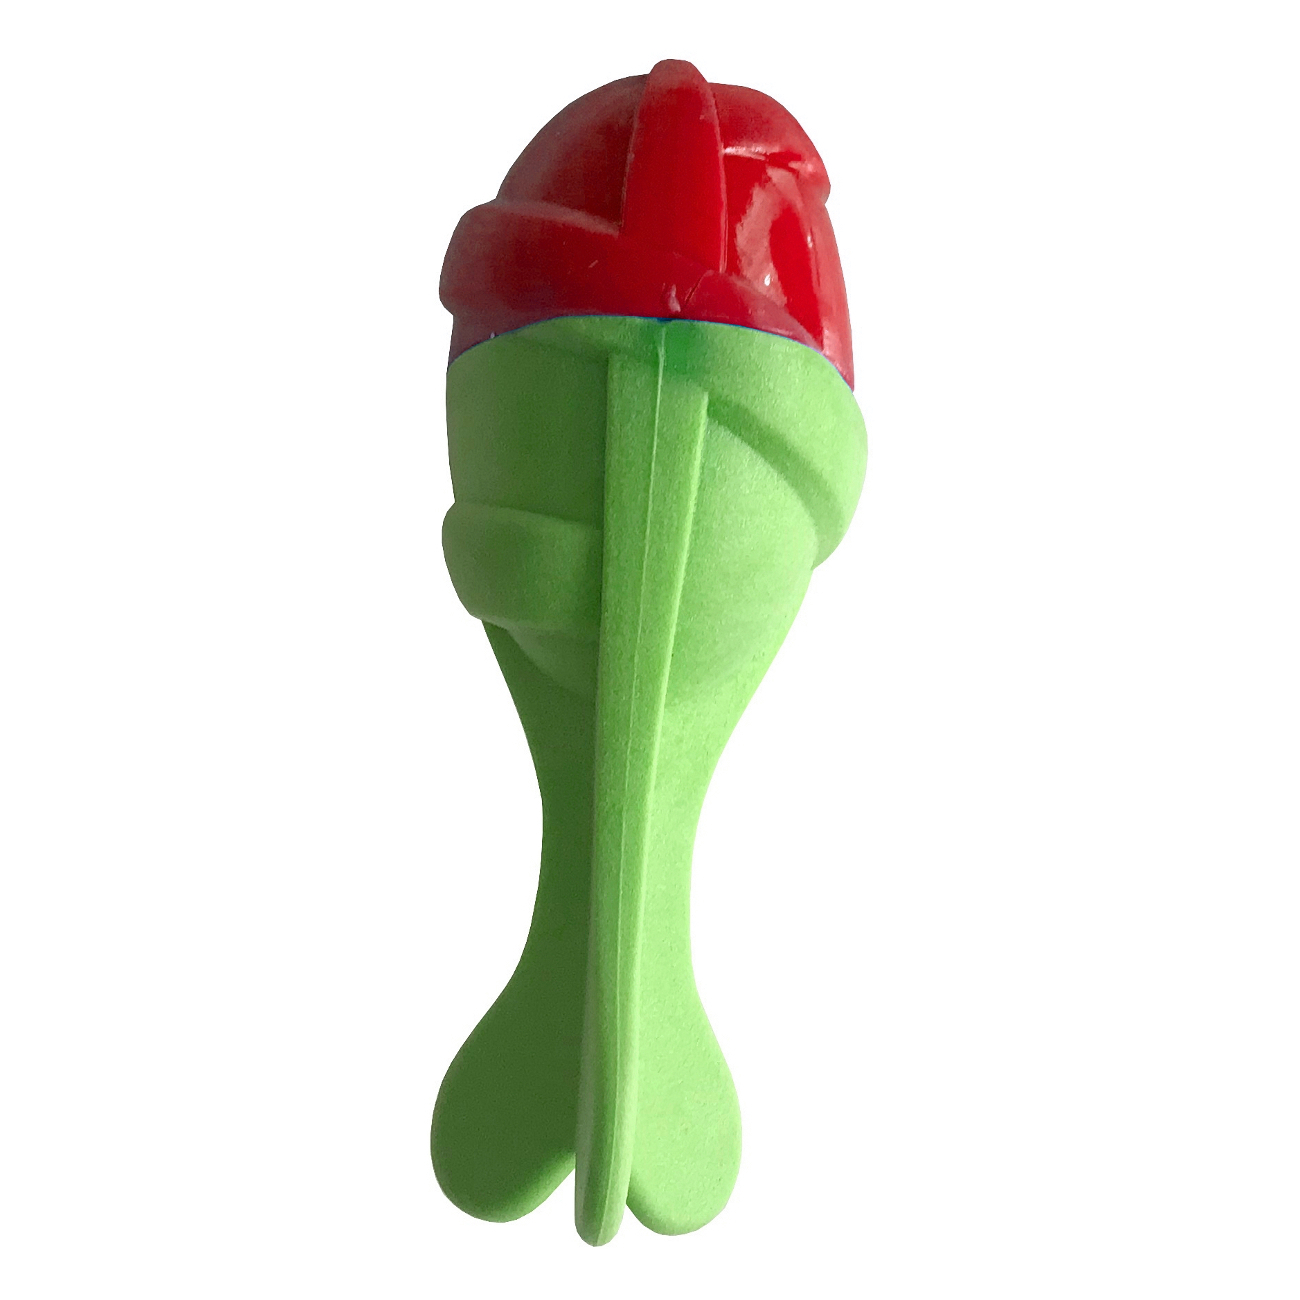 CLZ205 Sağlam Plastik Sesli Balık Köpek Oyuncağı 13 x 5 cm Kırmızı Yeşil